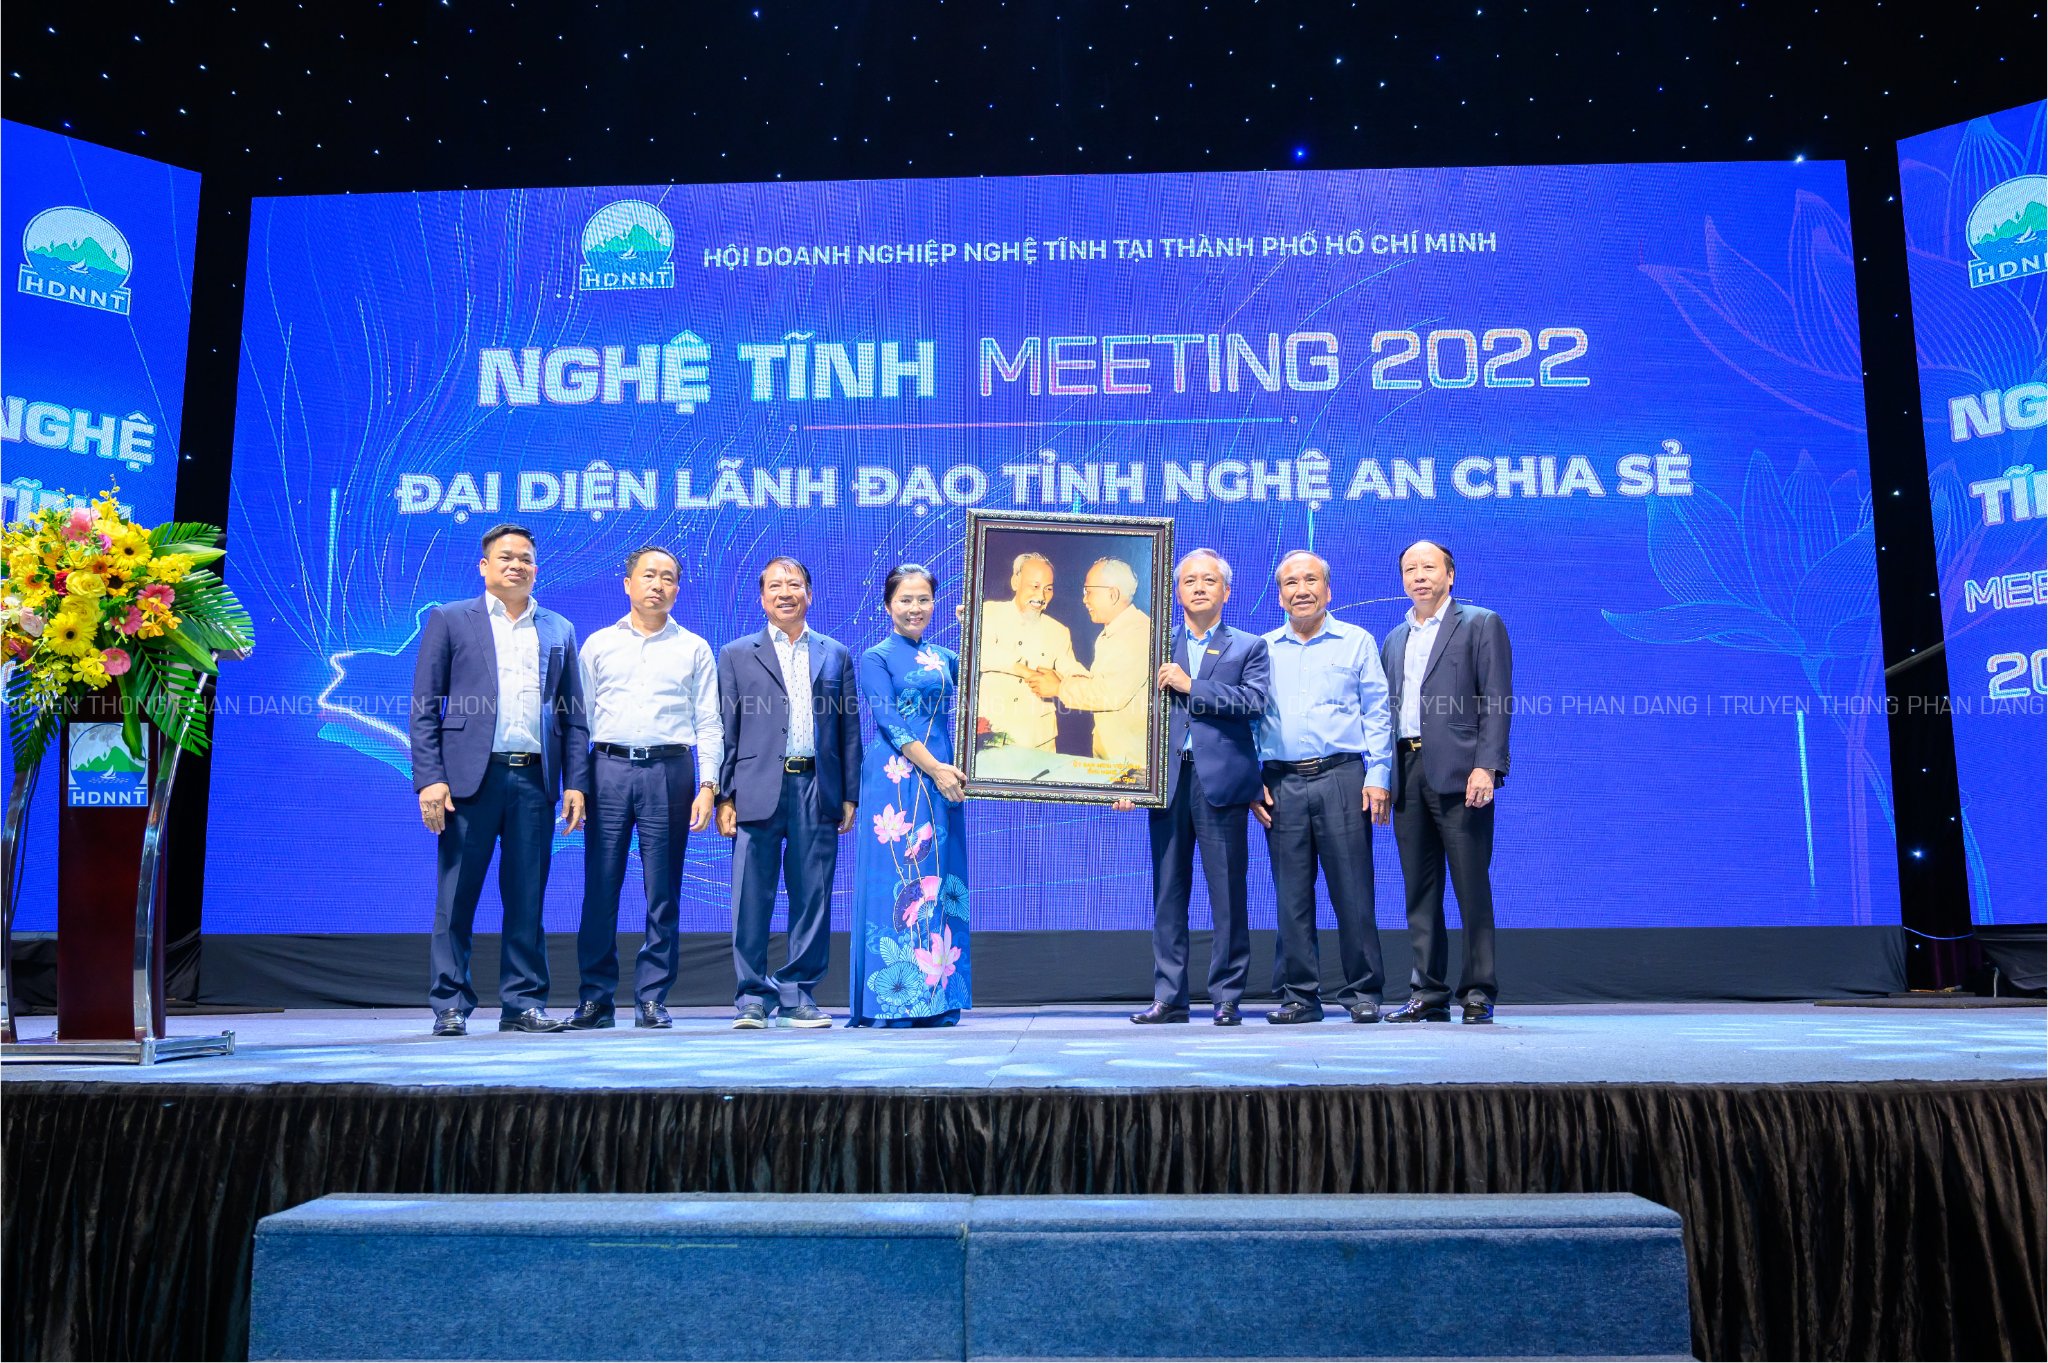 Nghệ Tĩnh meeting 2022